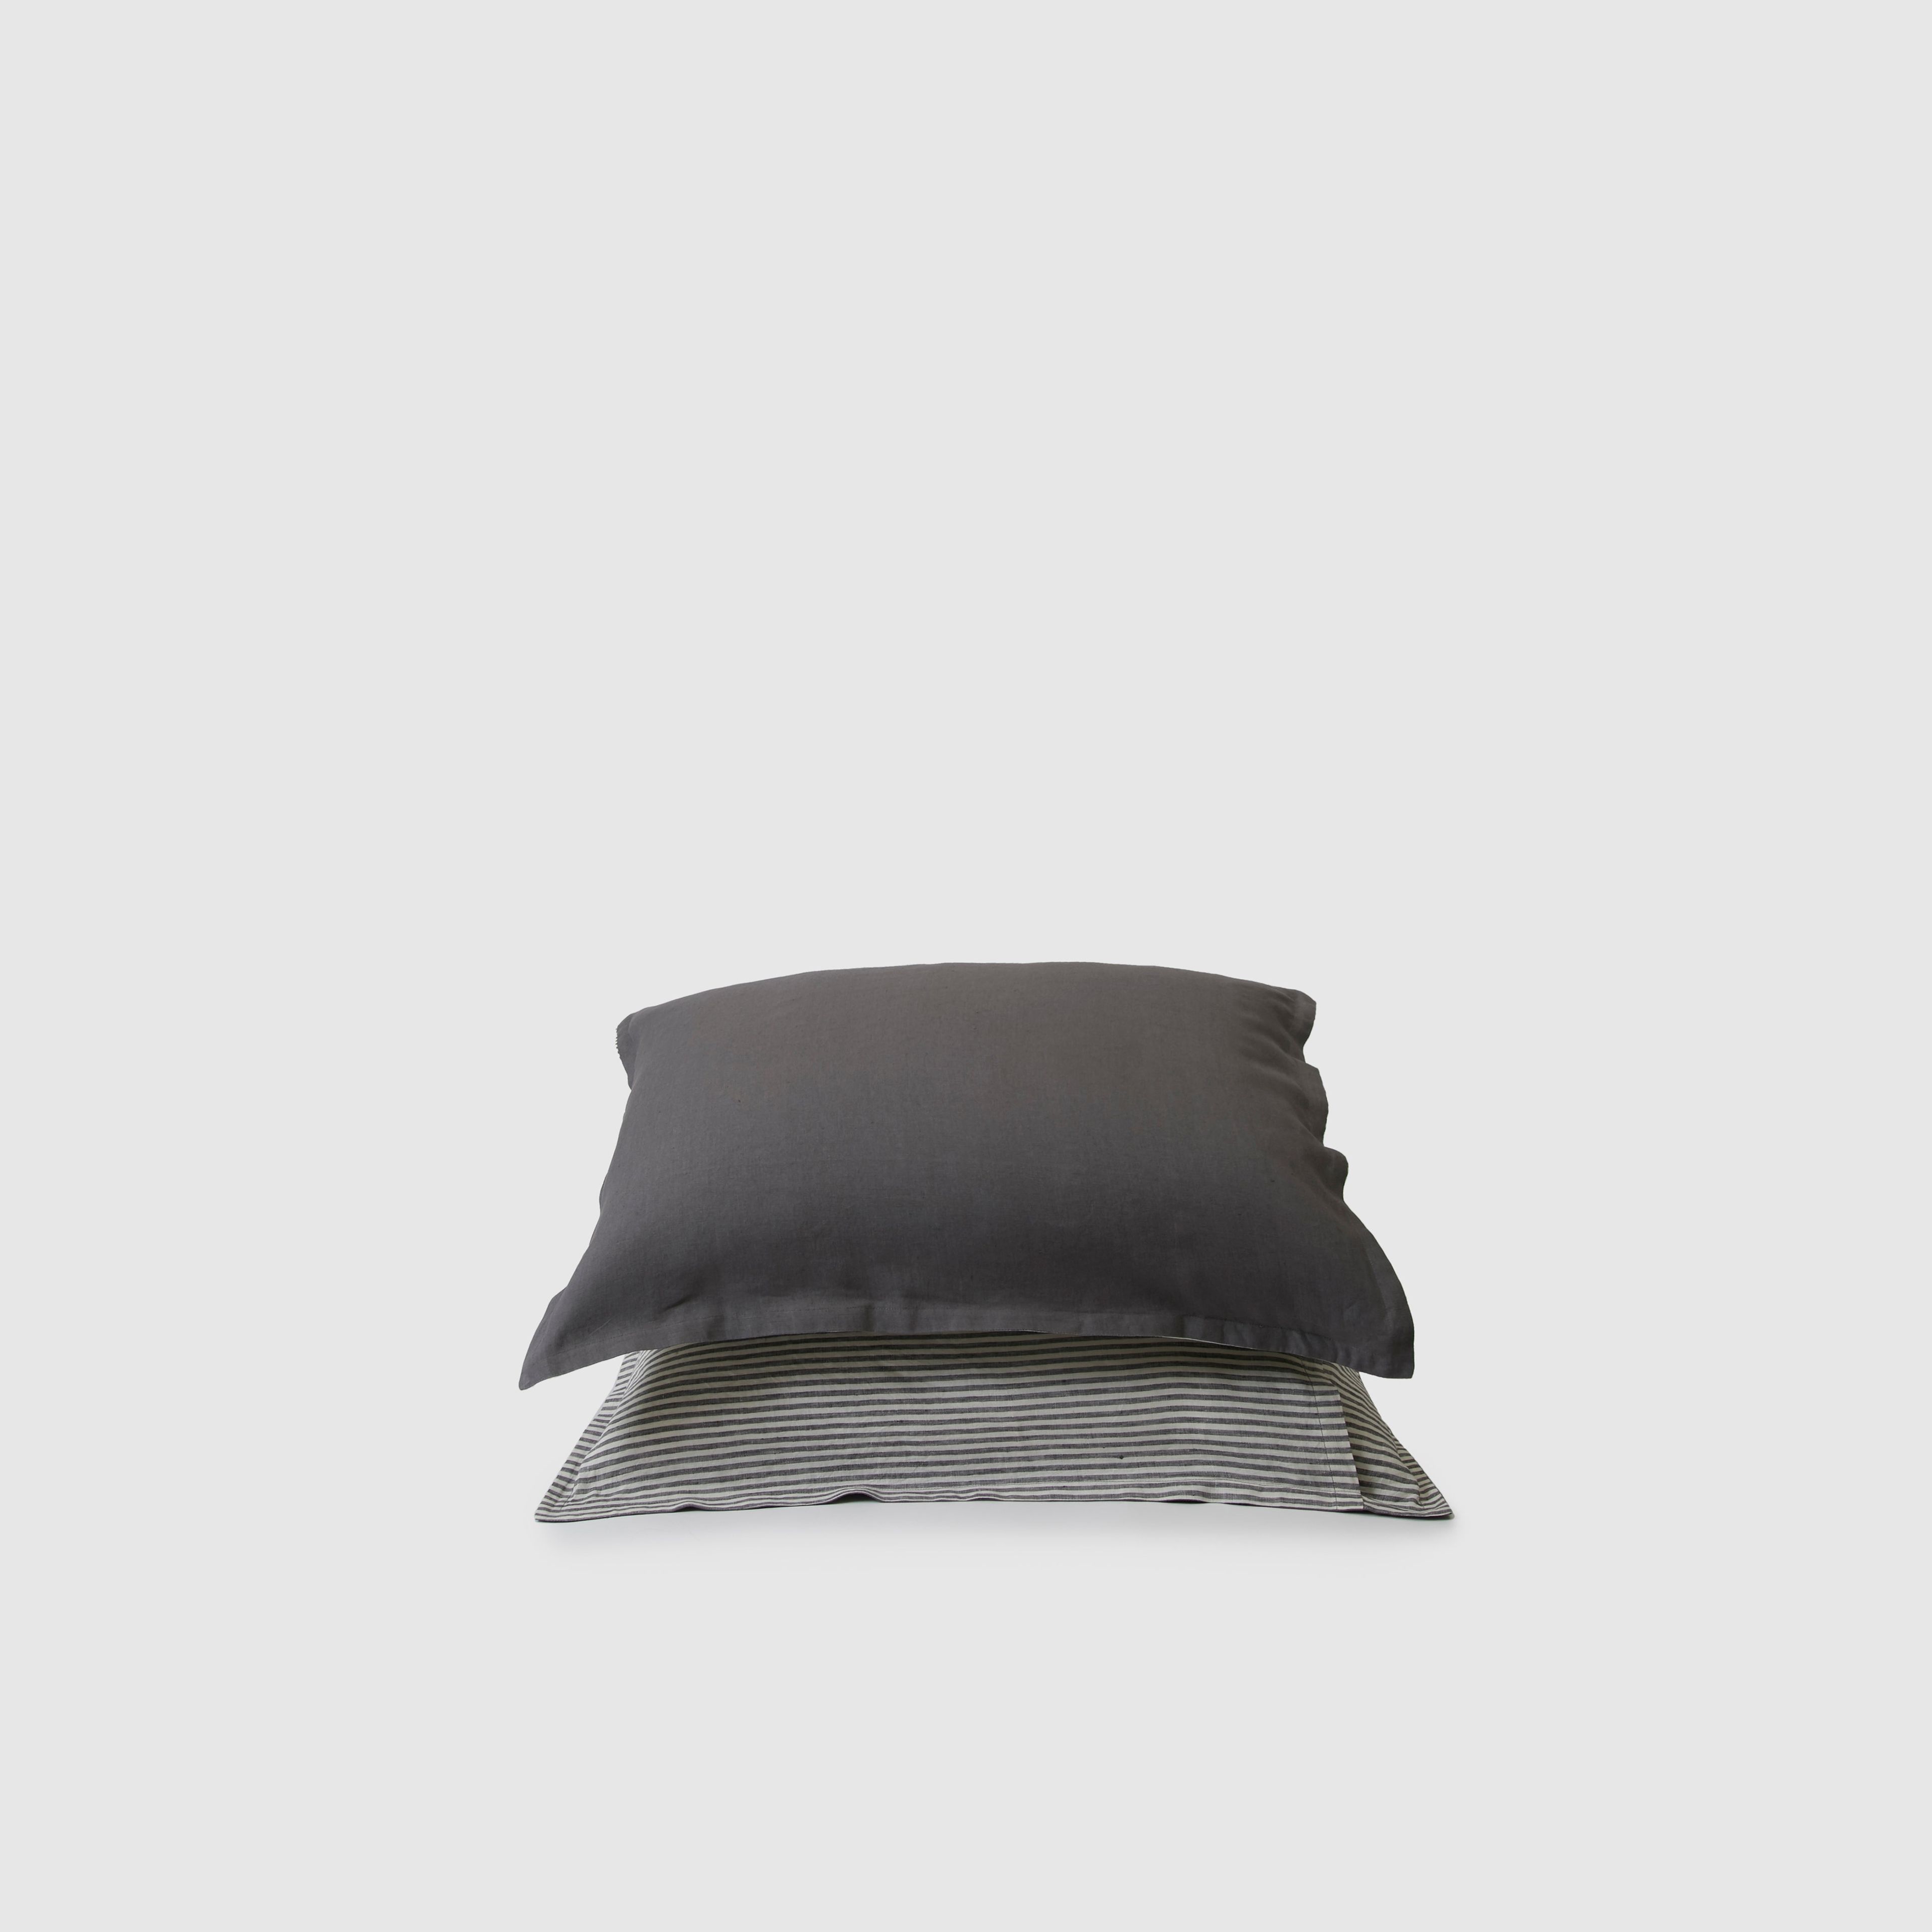 Marcel Linen Pillowcases (Pair) - Storm / Storm Stripe